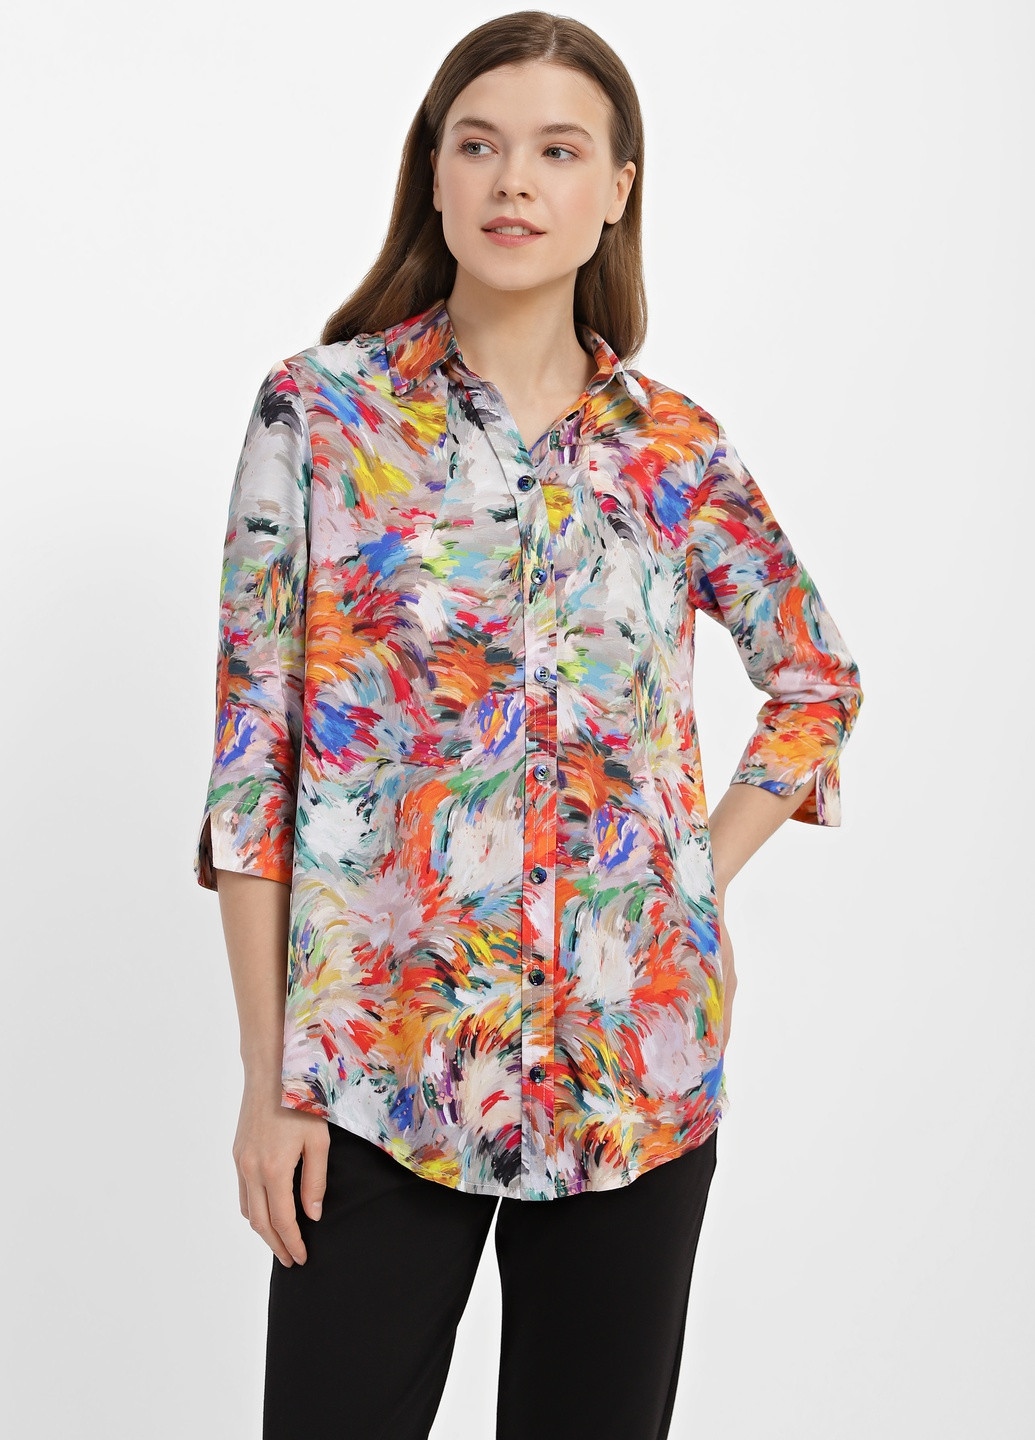 Комбинированная летняя блузка жіноча 1097-4 DANNA